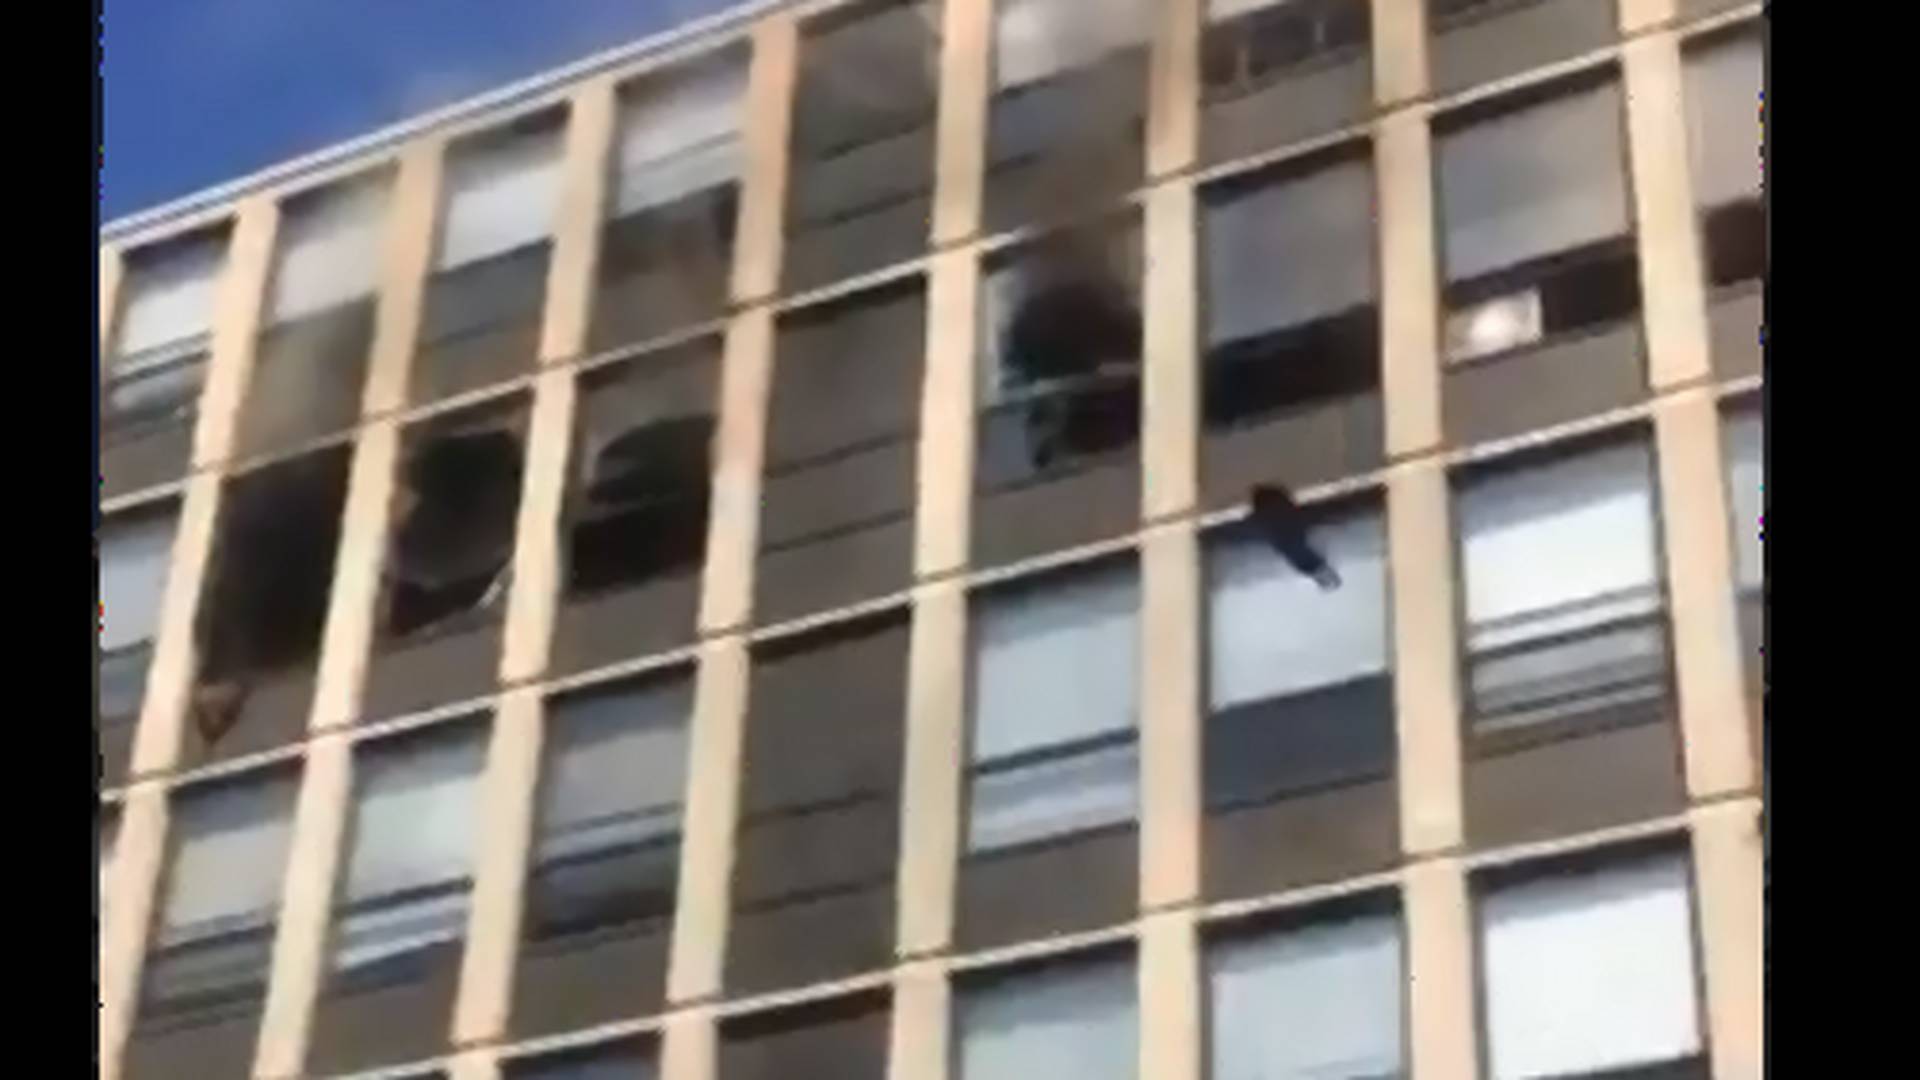 Öt emeletet zuhant a macska a lángoló épületből, majd pattant egyet, és elsétált - videó